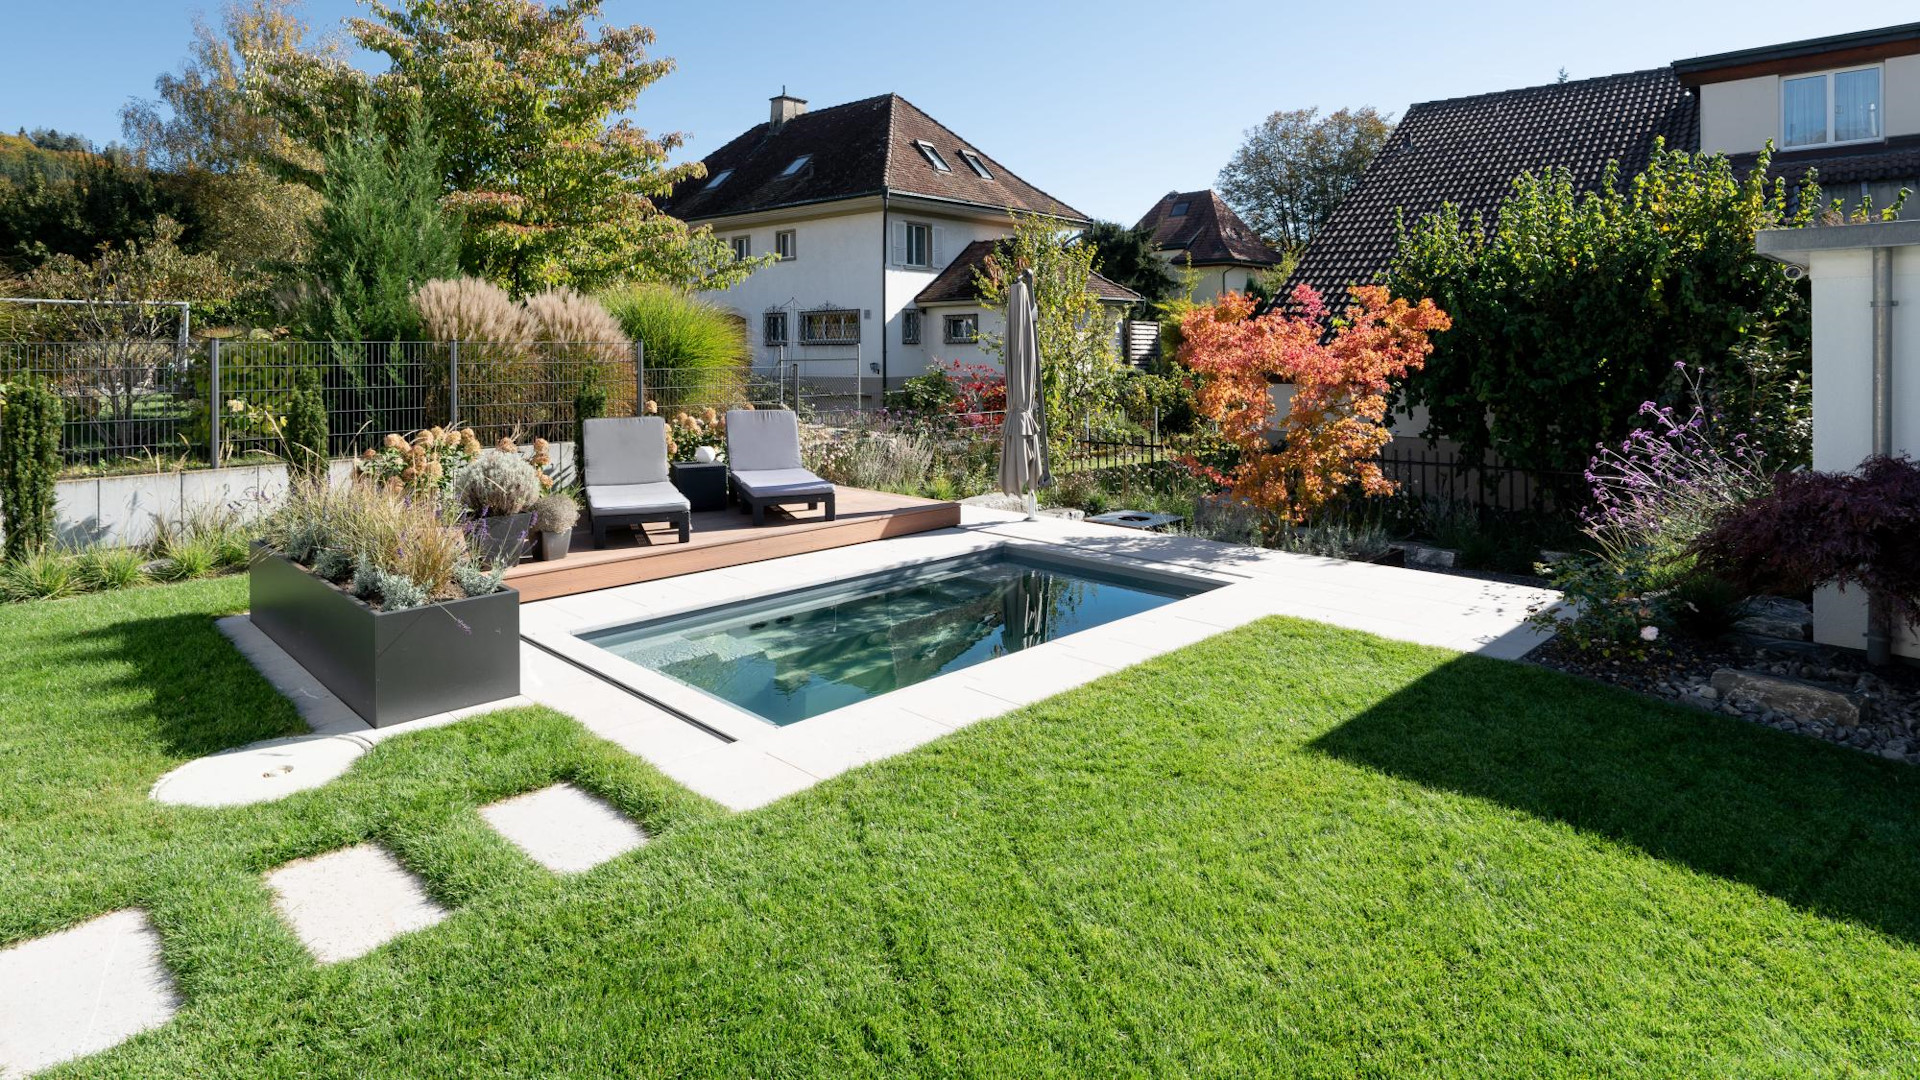 Minipool: Ein kleiner Pool im Garten, ideal für eine schnelle Abkühlung im Sommer.